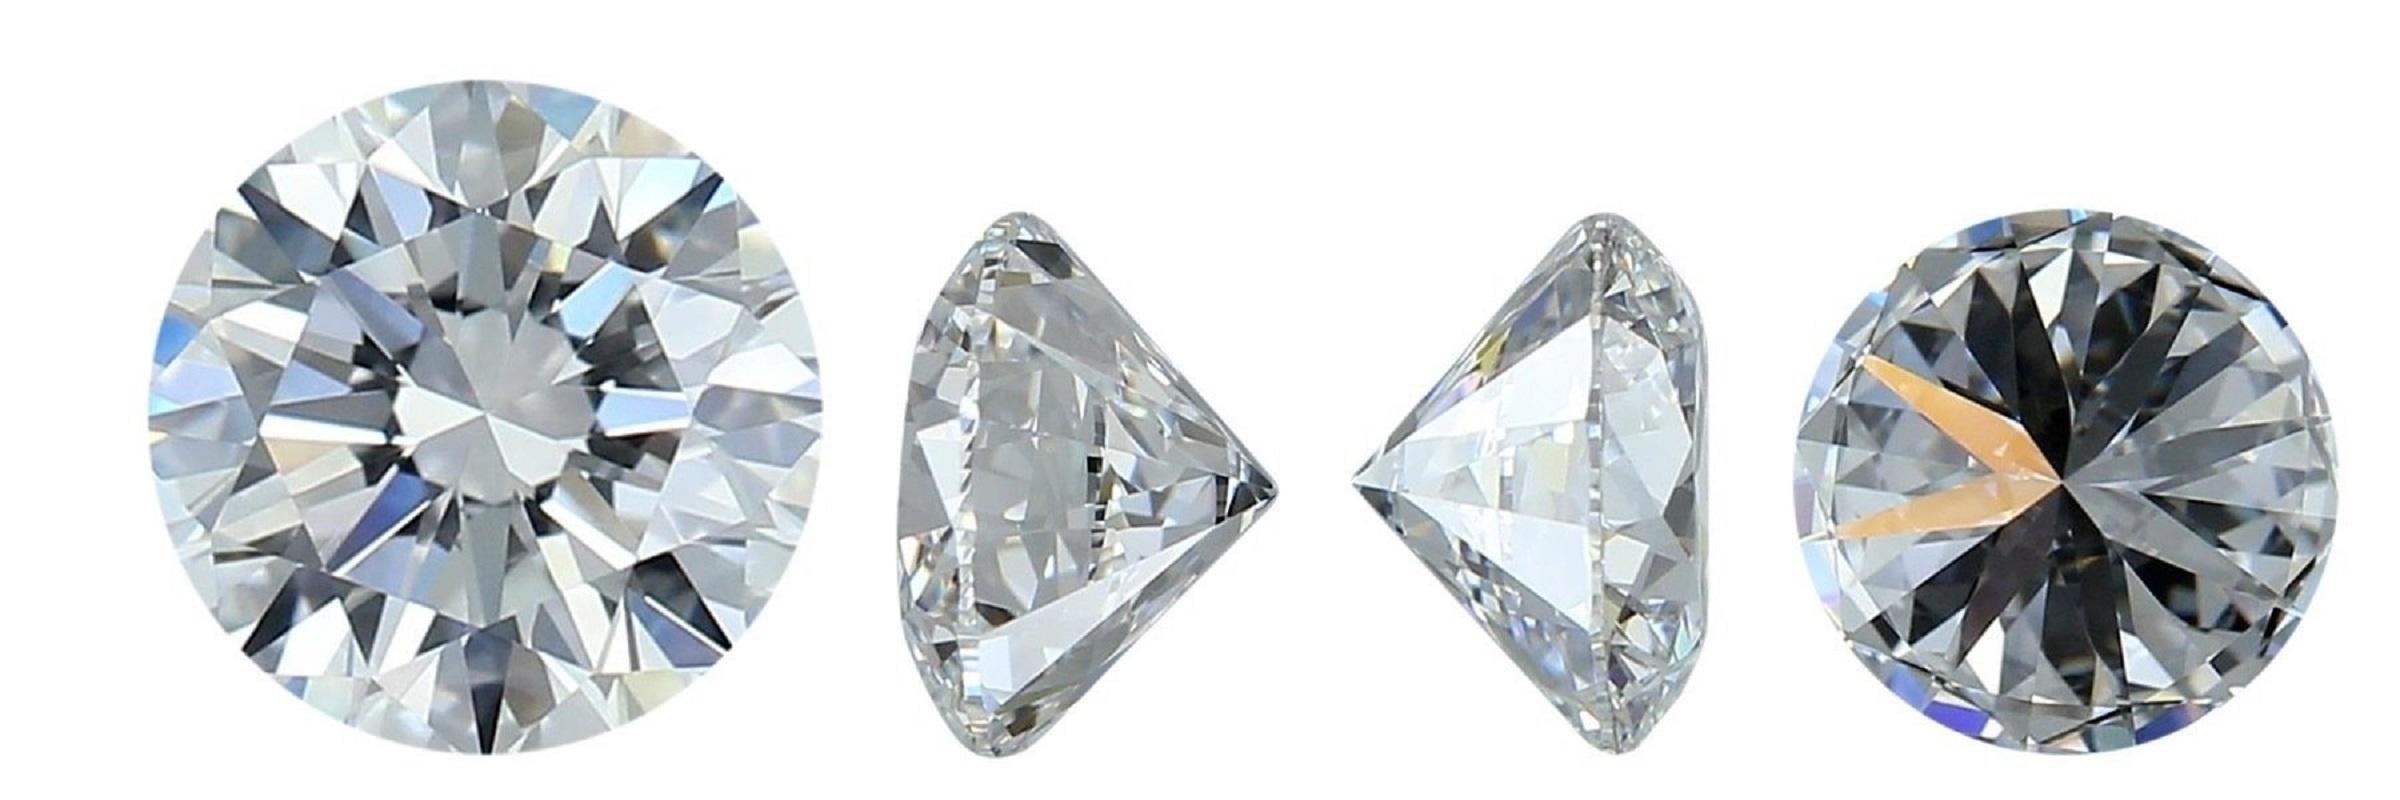 Superbe diamant rond brillant de taille idéale de 0,85 carat H VVS2, extrêmement brillant et étincelant.
Ce diamant est accompagné d'un certificat GIA et est gravé d'un numéro d'inscription au laser.

SKU : C-DSPV-167351-17
GIA 3455301598